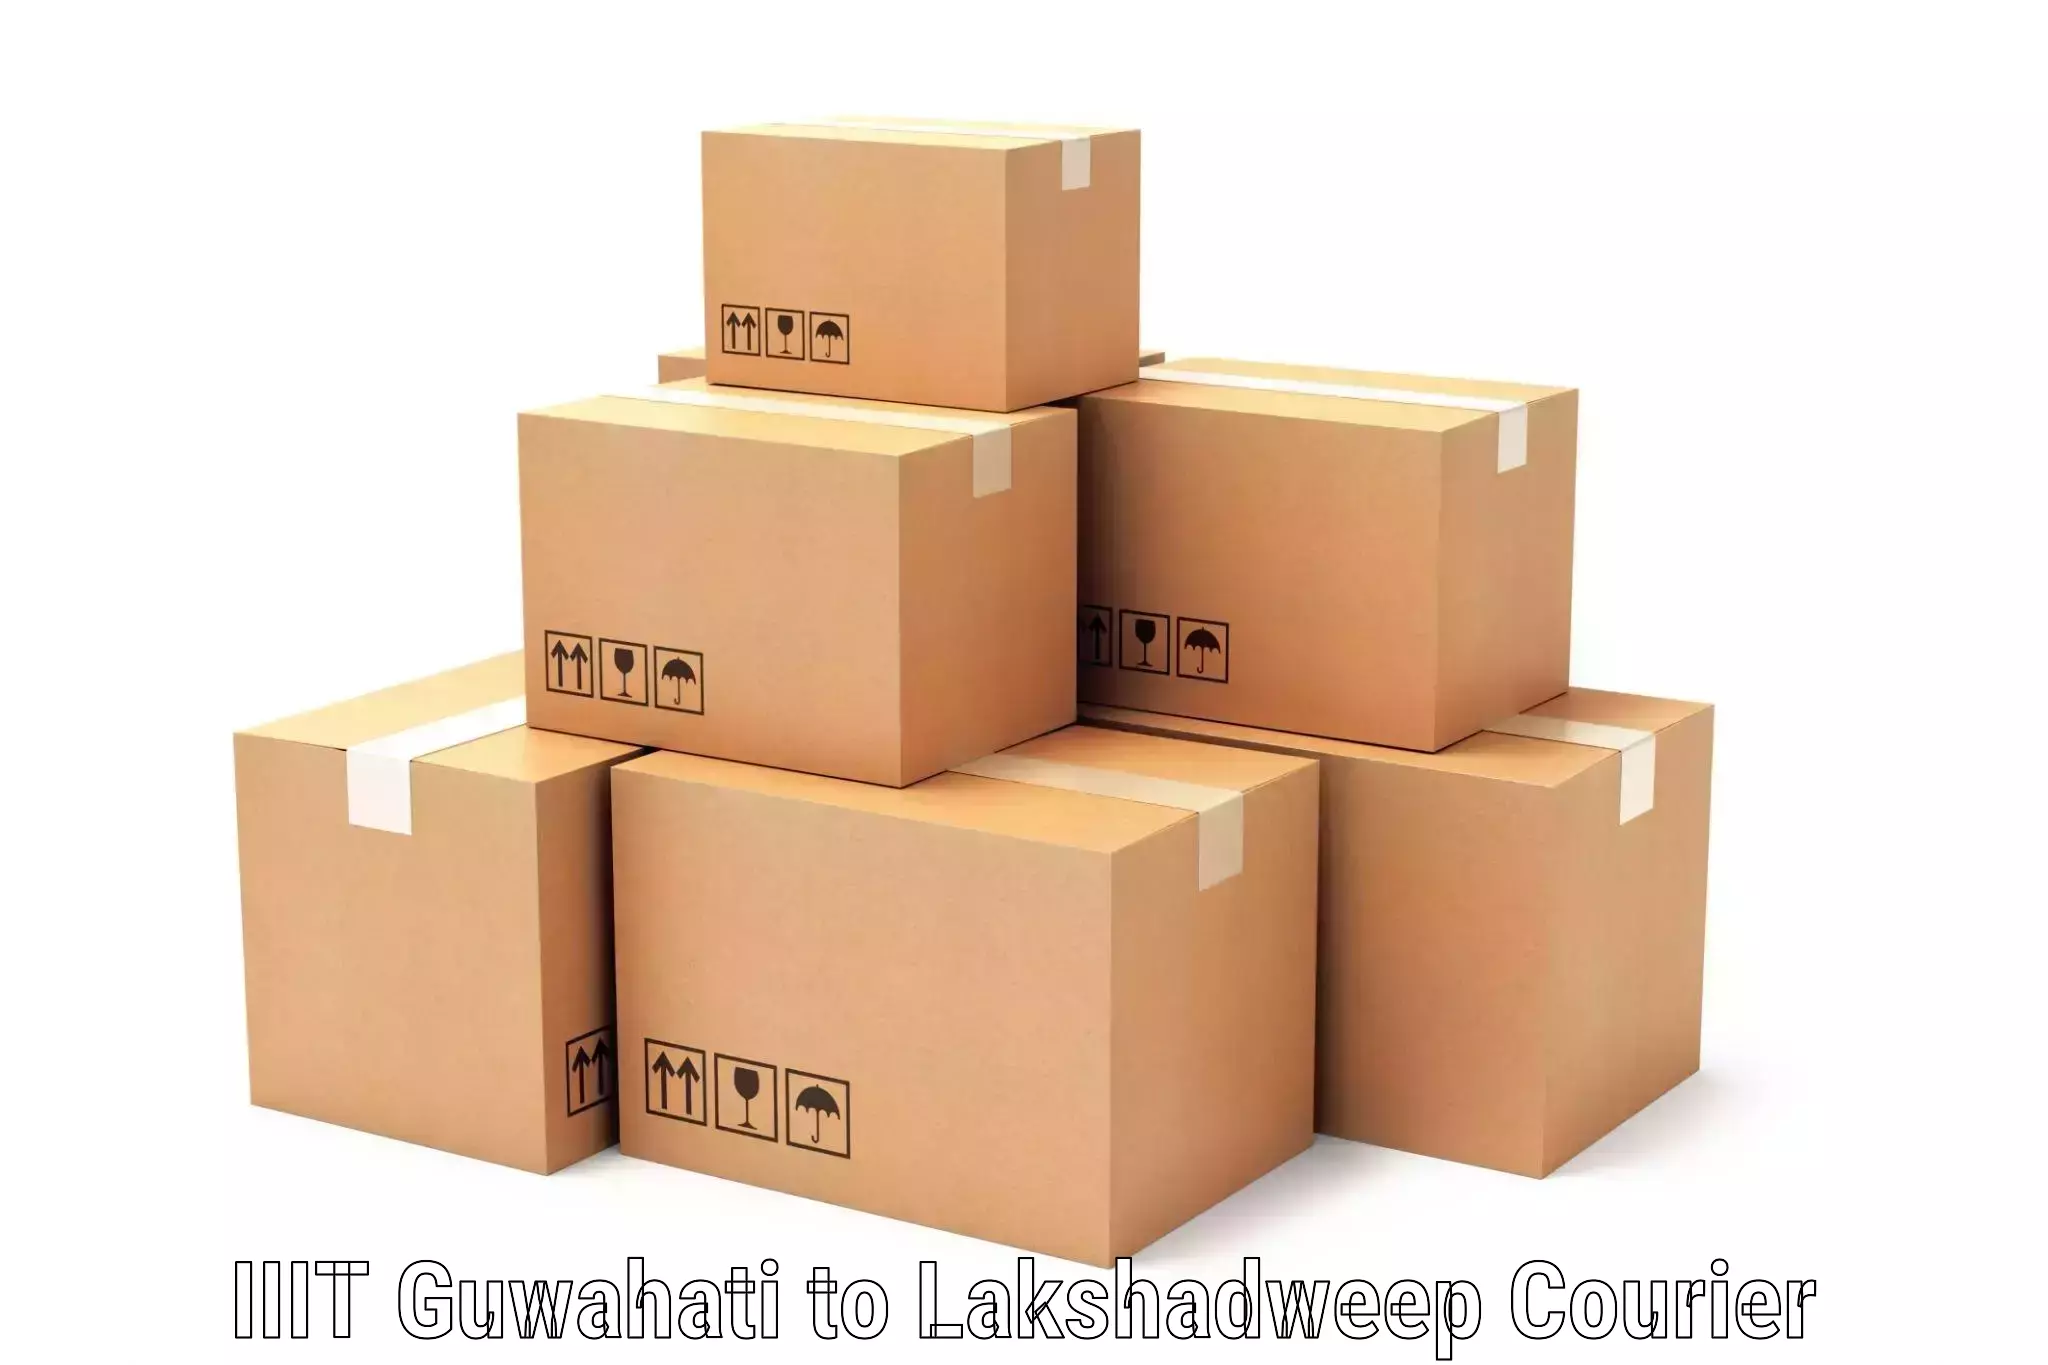 Online package tracking IIIT Guwahati to Lakshadweep